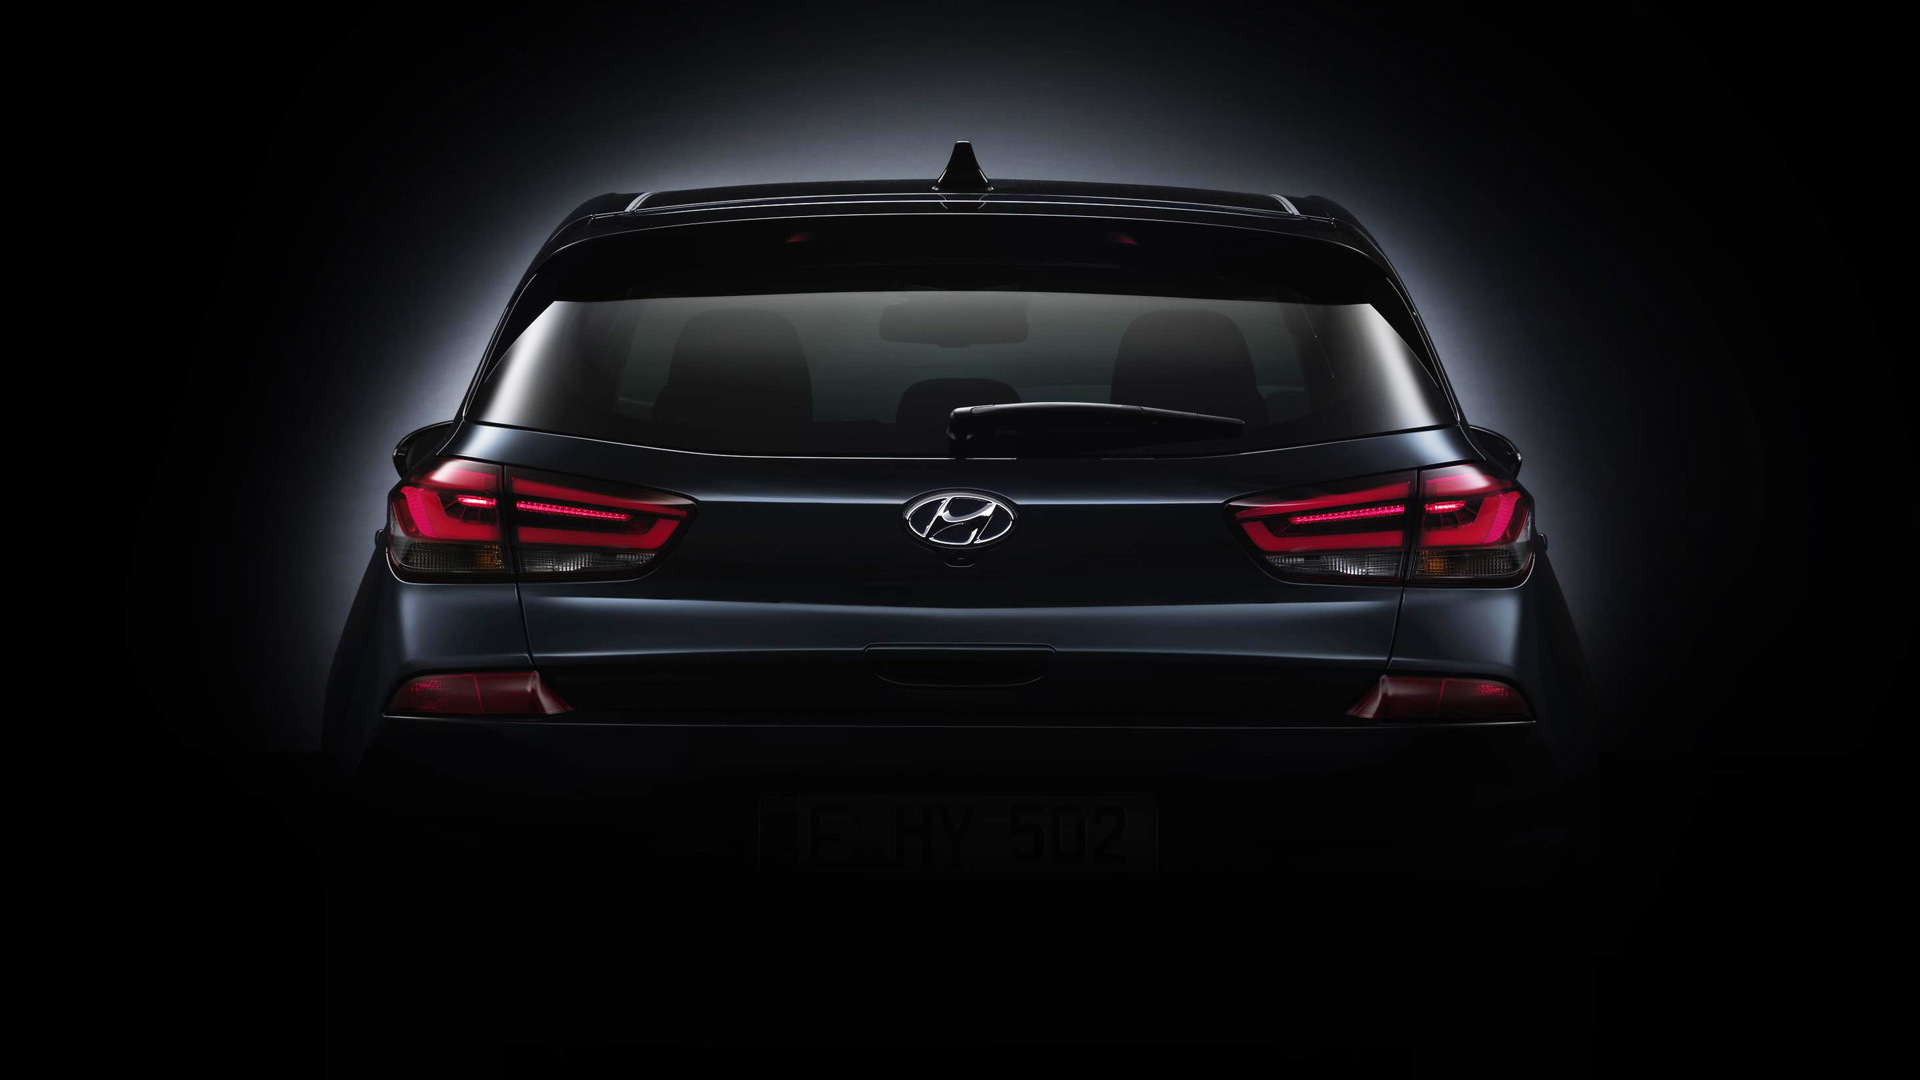 Teaser for 2017 Hyundai i30 debuting at 2016 Paris auto show